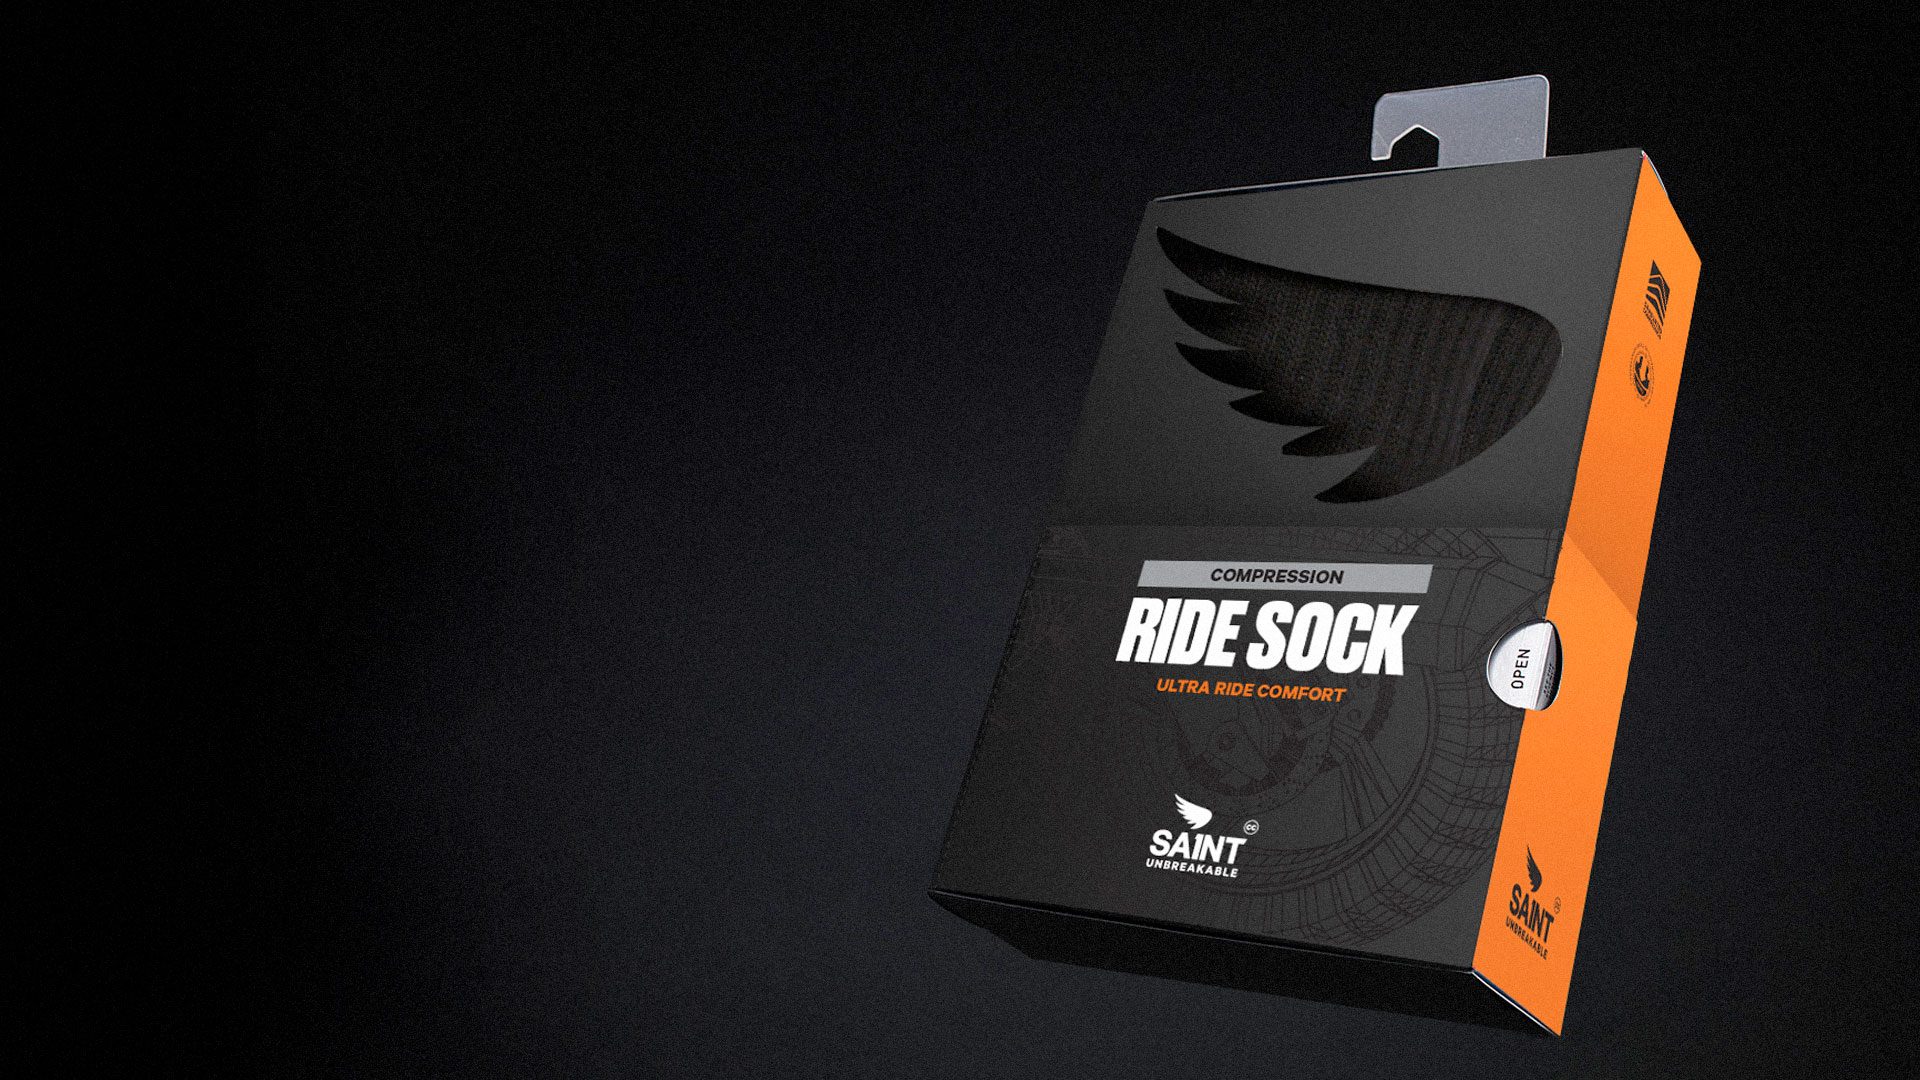 Robertstown-Saint-Packaging-Ride-Sock